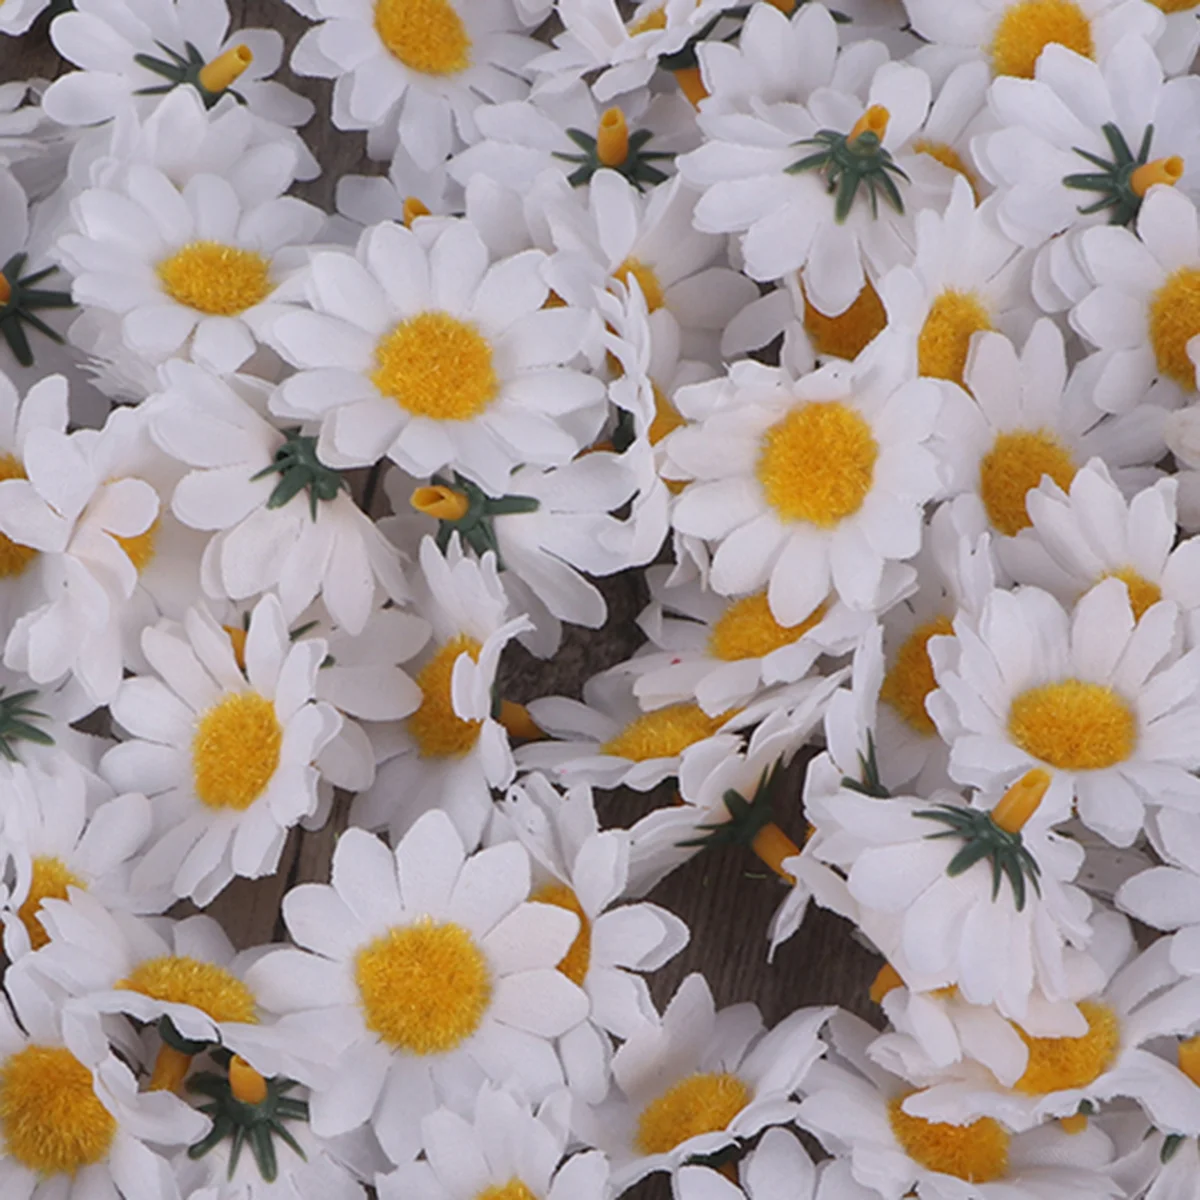 100 adet Yapay Papatya Kumaş Papatya Çiçek Yapay Papatya Krizantem Papatya Çiçekler Düğün Ev Dekorasyon için (Beyaz ) Görüntü 3